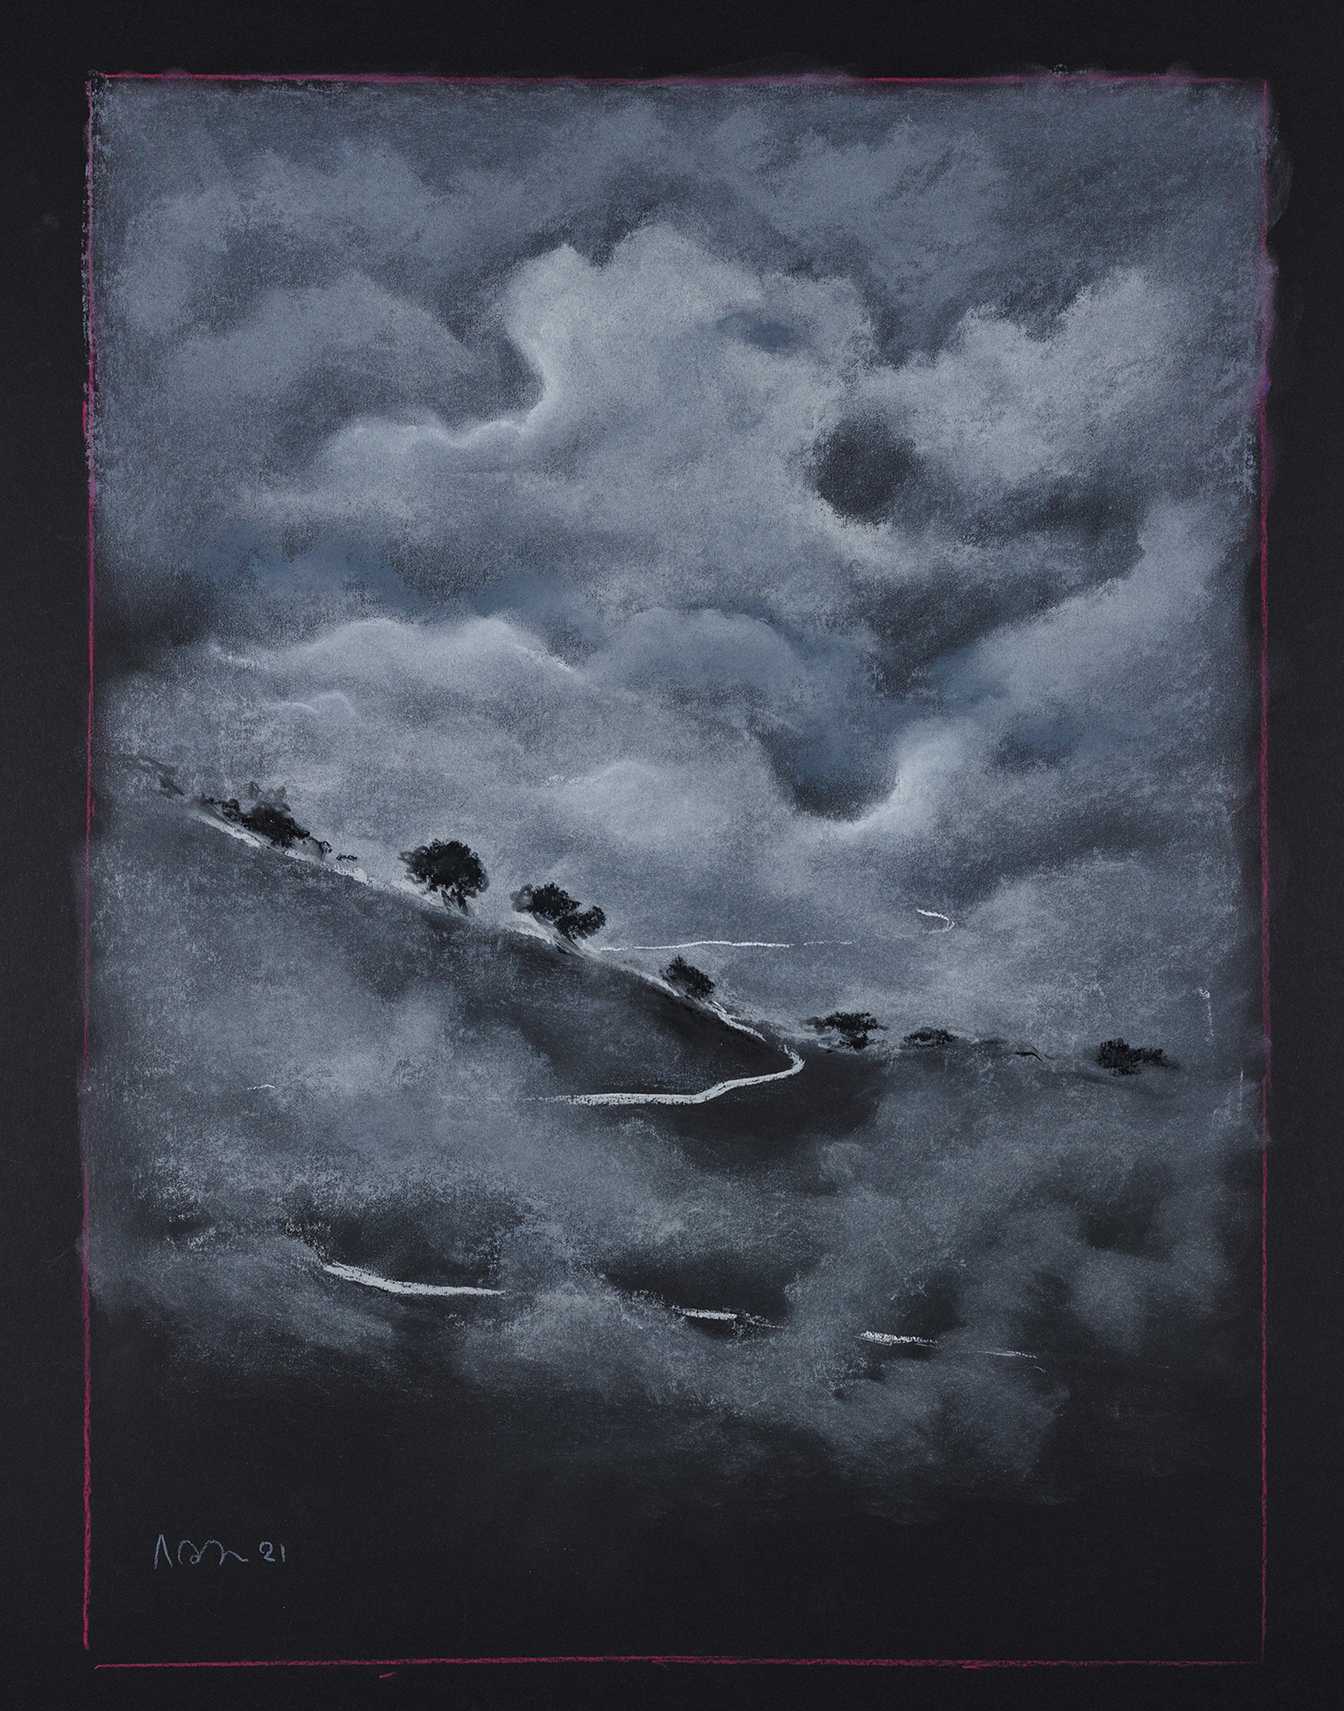 Σύννεφο που ξεστράτισε και σκόνταψε στο φως: Έκθεση του Λουδοβίκου των Ανωγείων στην γκαλερί Genesis